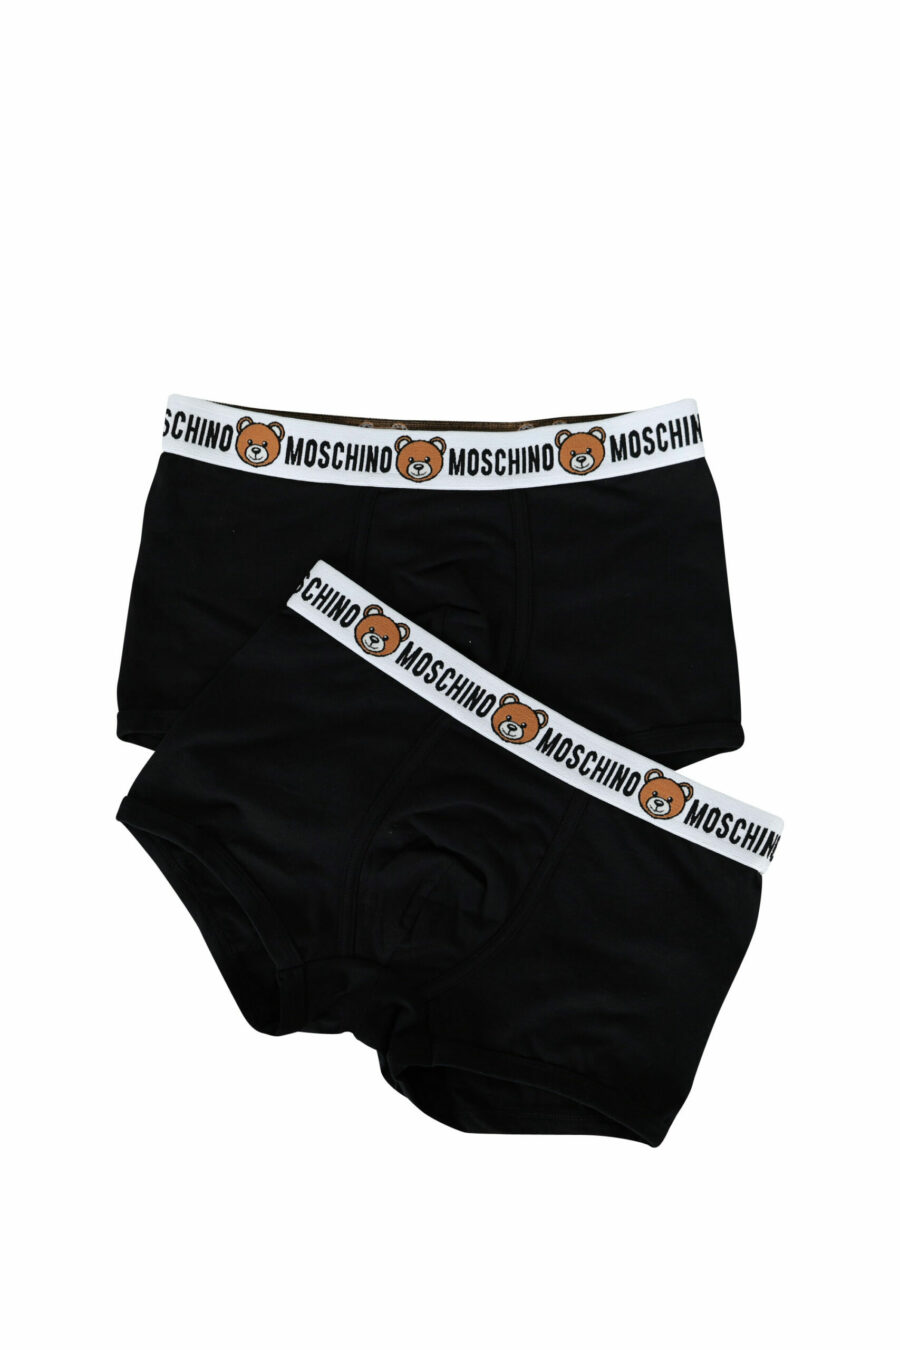 Boxers negros con logo en cinta oso "underbear" en cintura - 667113004976 scaled